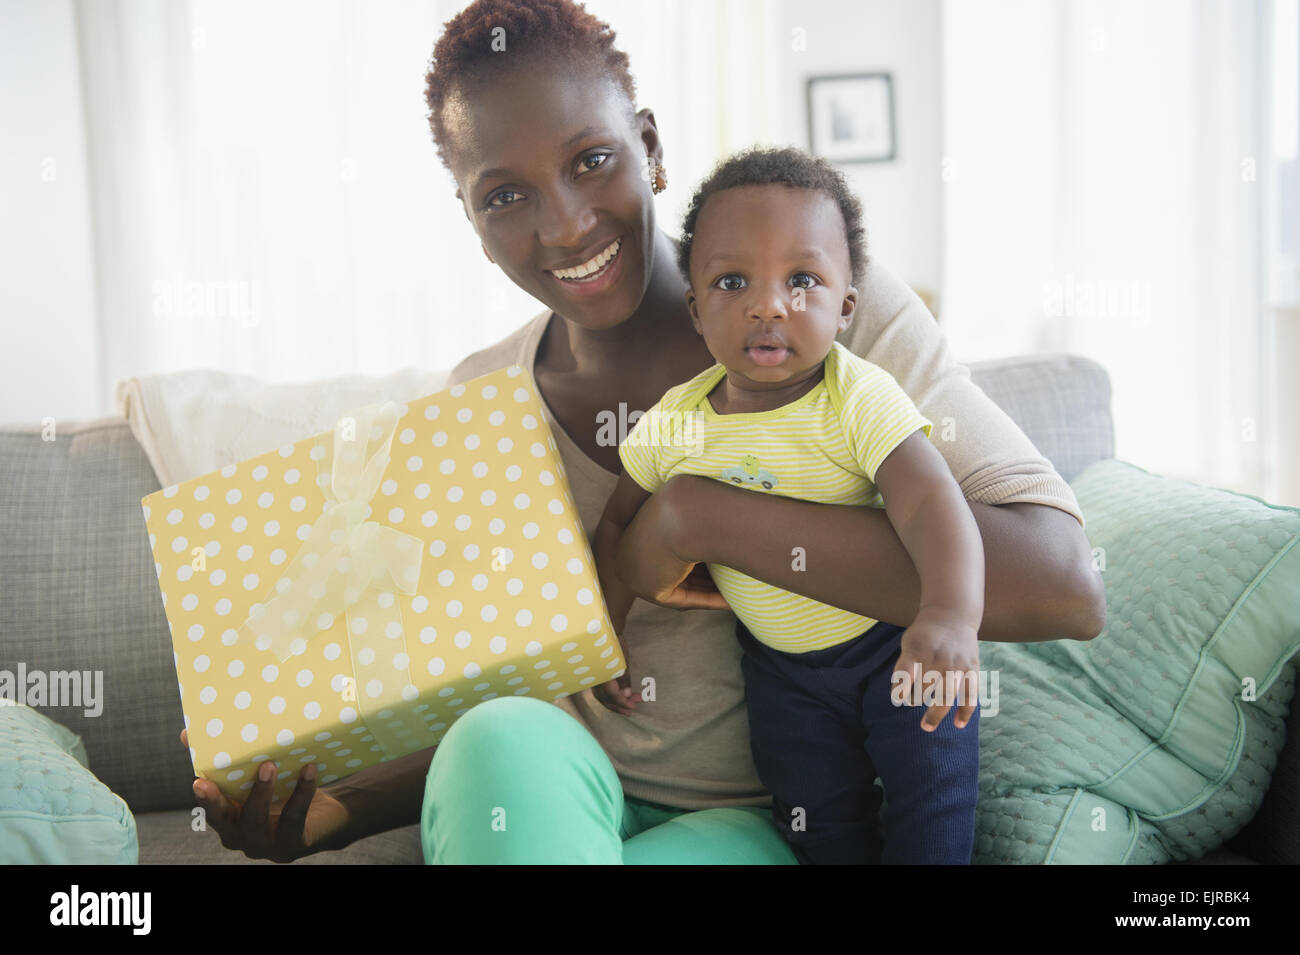 Mère noire et son holding gift on sofa Banque D'Images